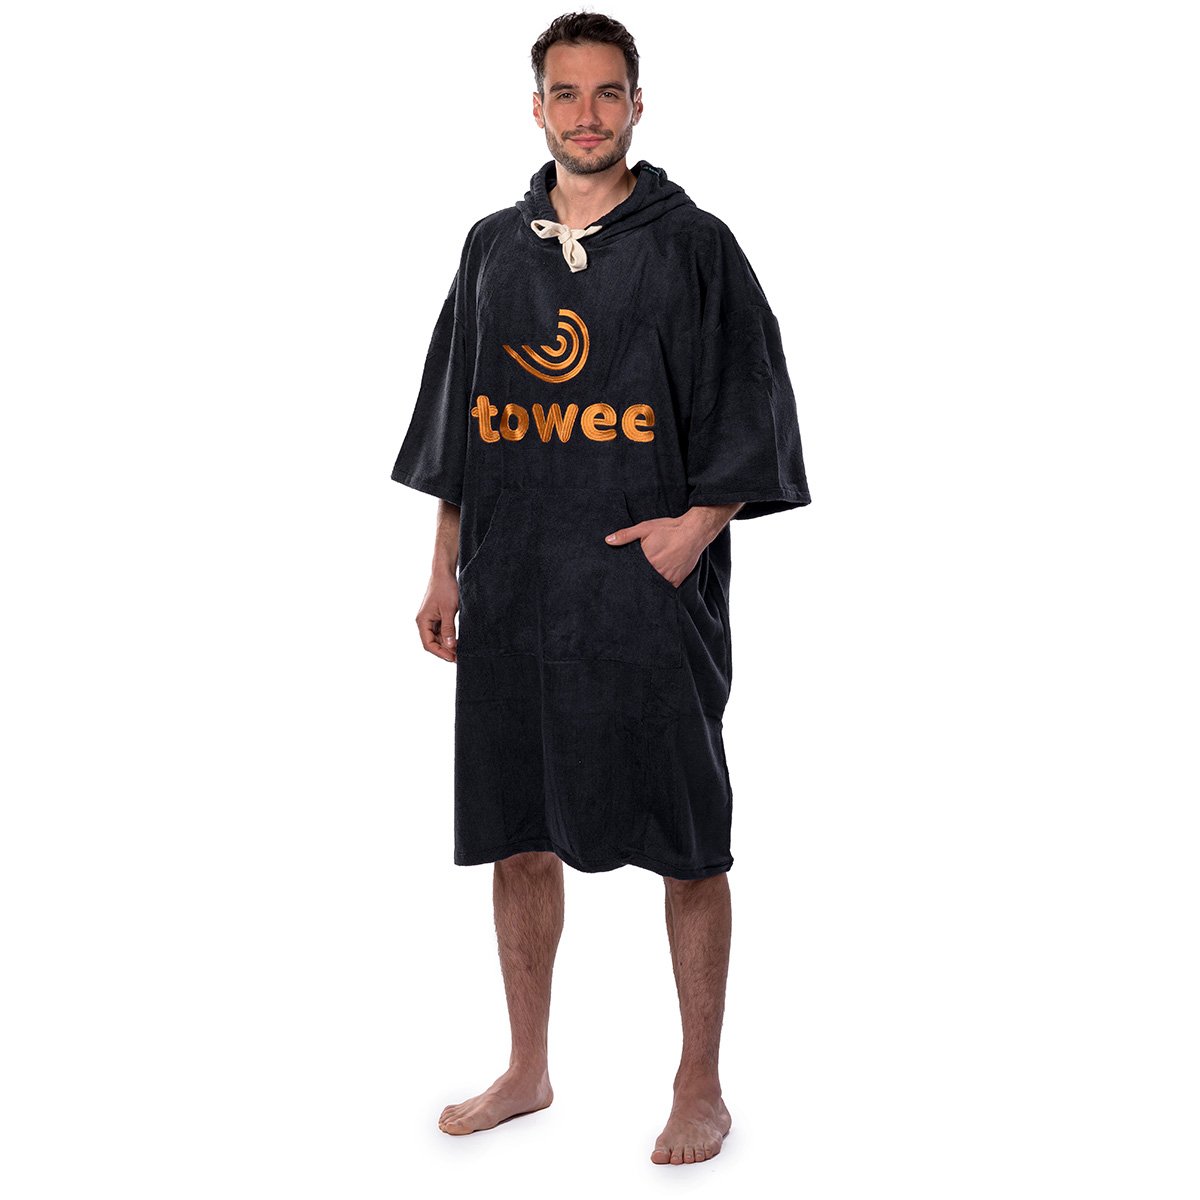 Surf pončo Towee antracit s oranžovou výšivkou, 80 x 115 cm